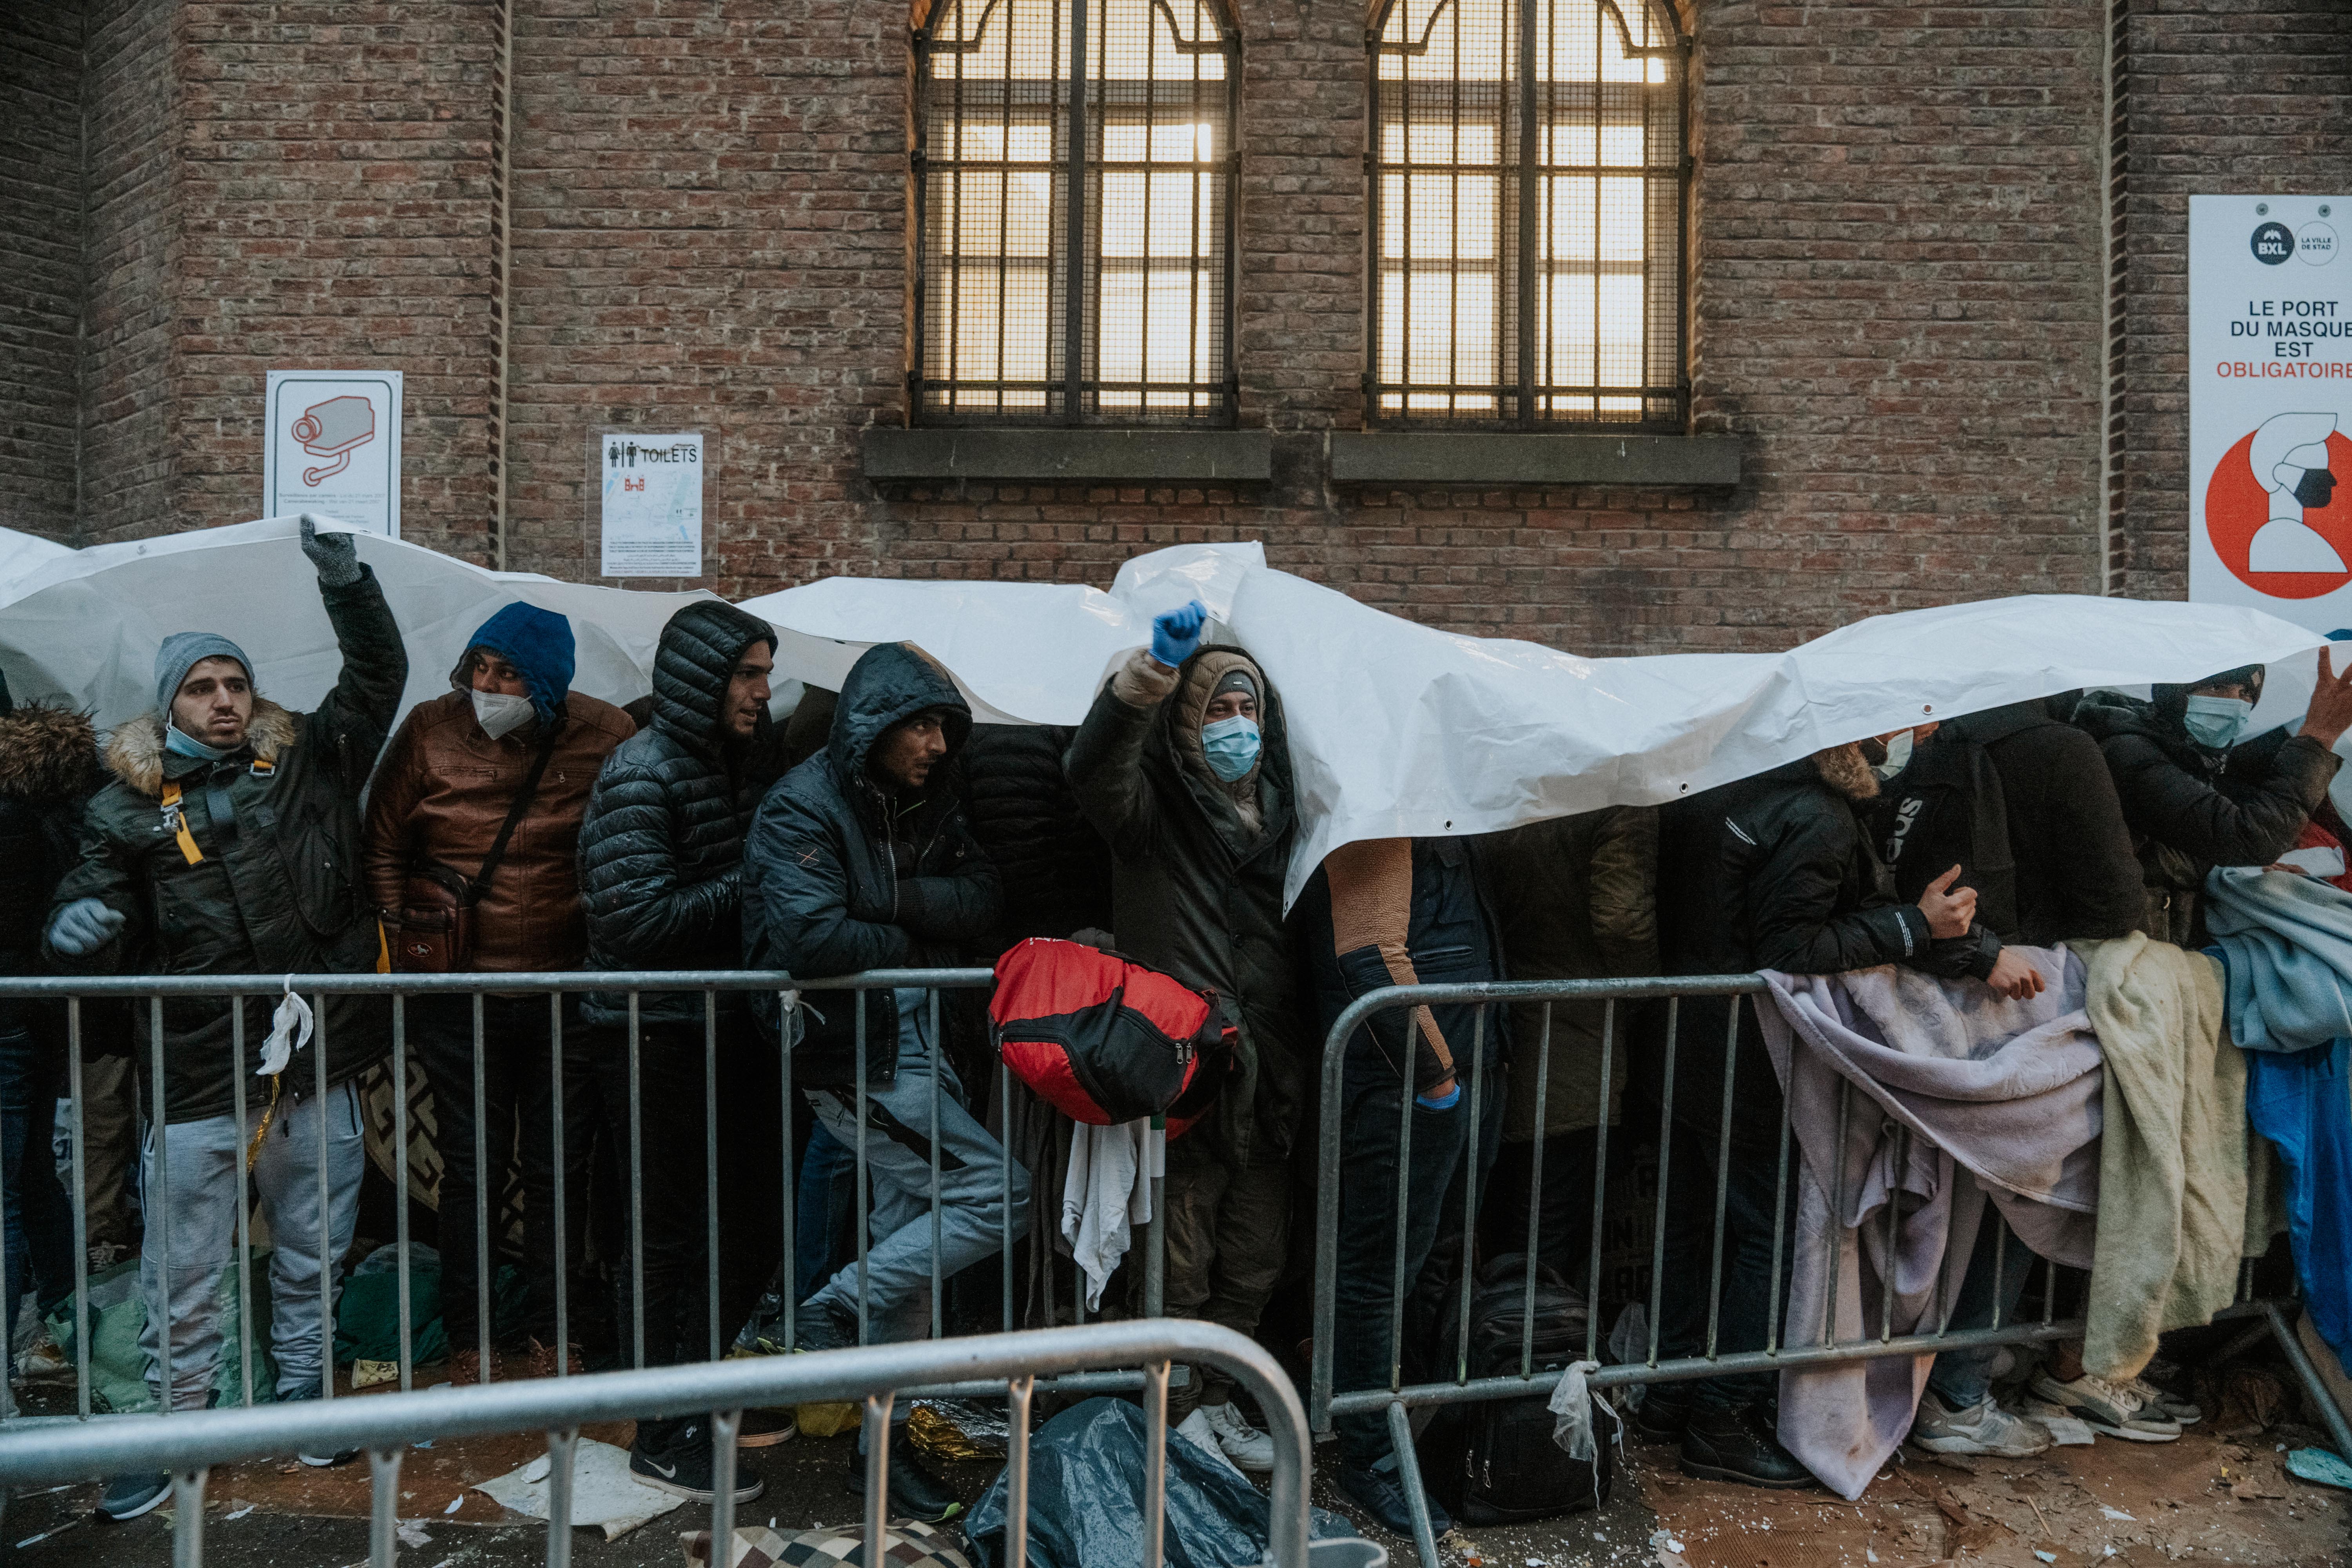 Honderden mensen stonden in december 2021 dagenlang te wachten in de vrieskou aan Klein Kasteeltje in Brussel.